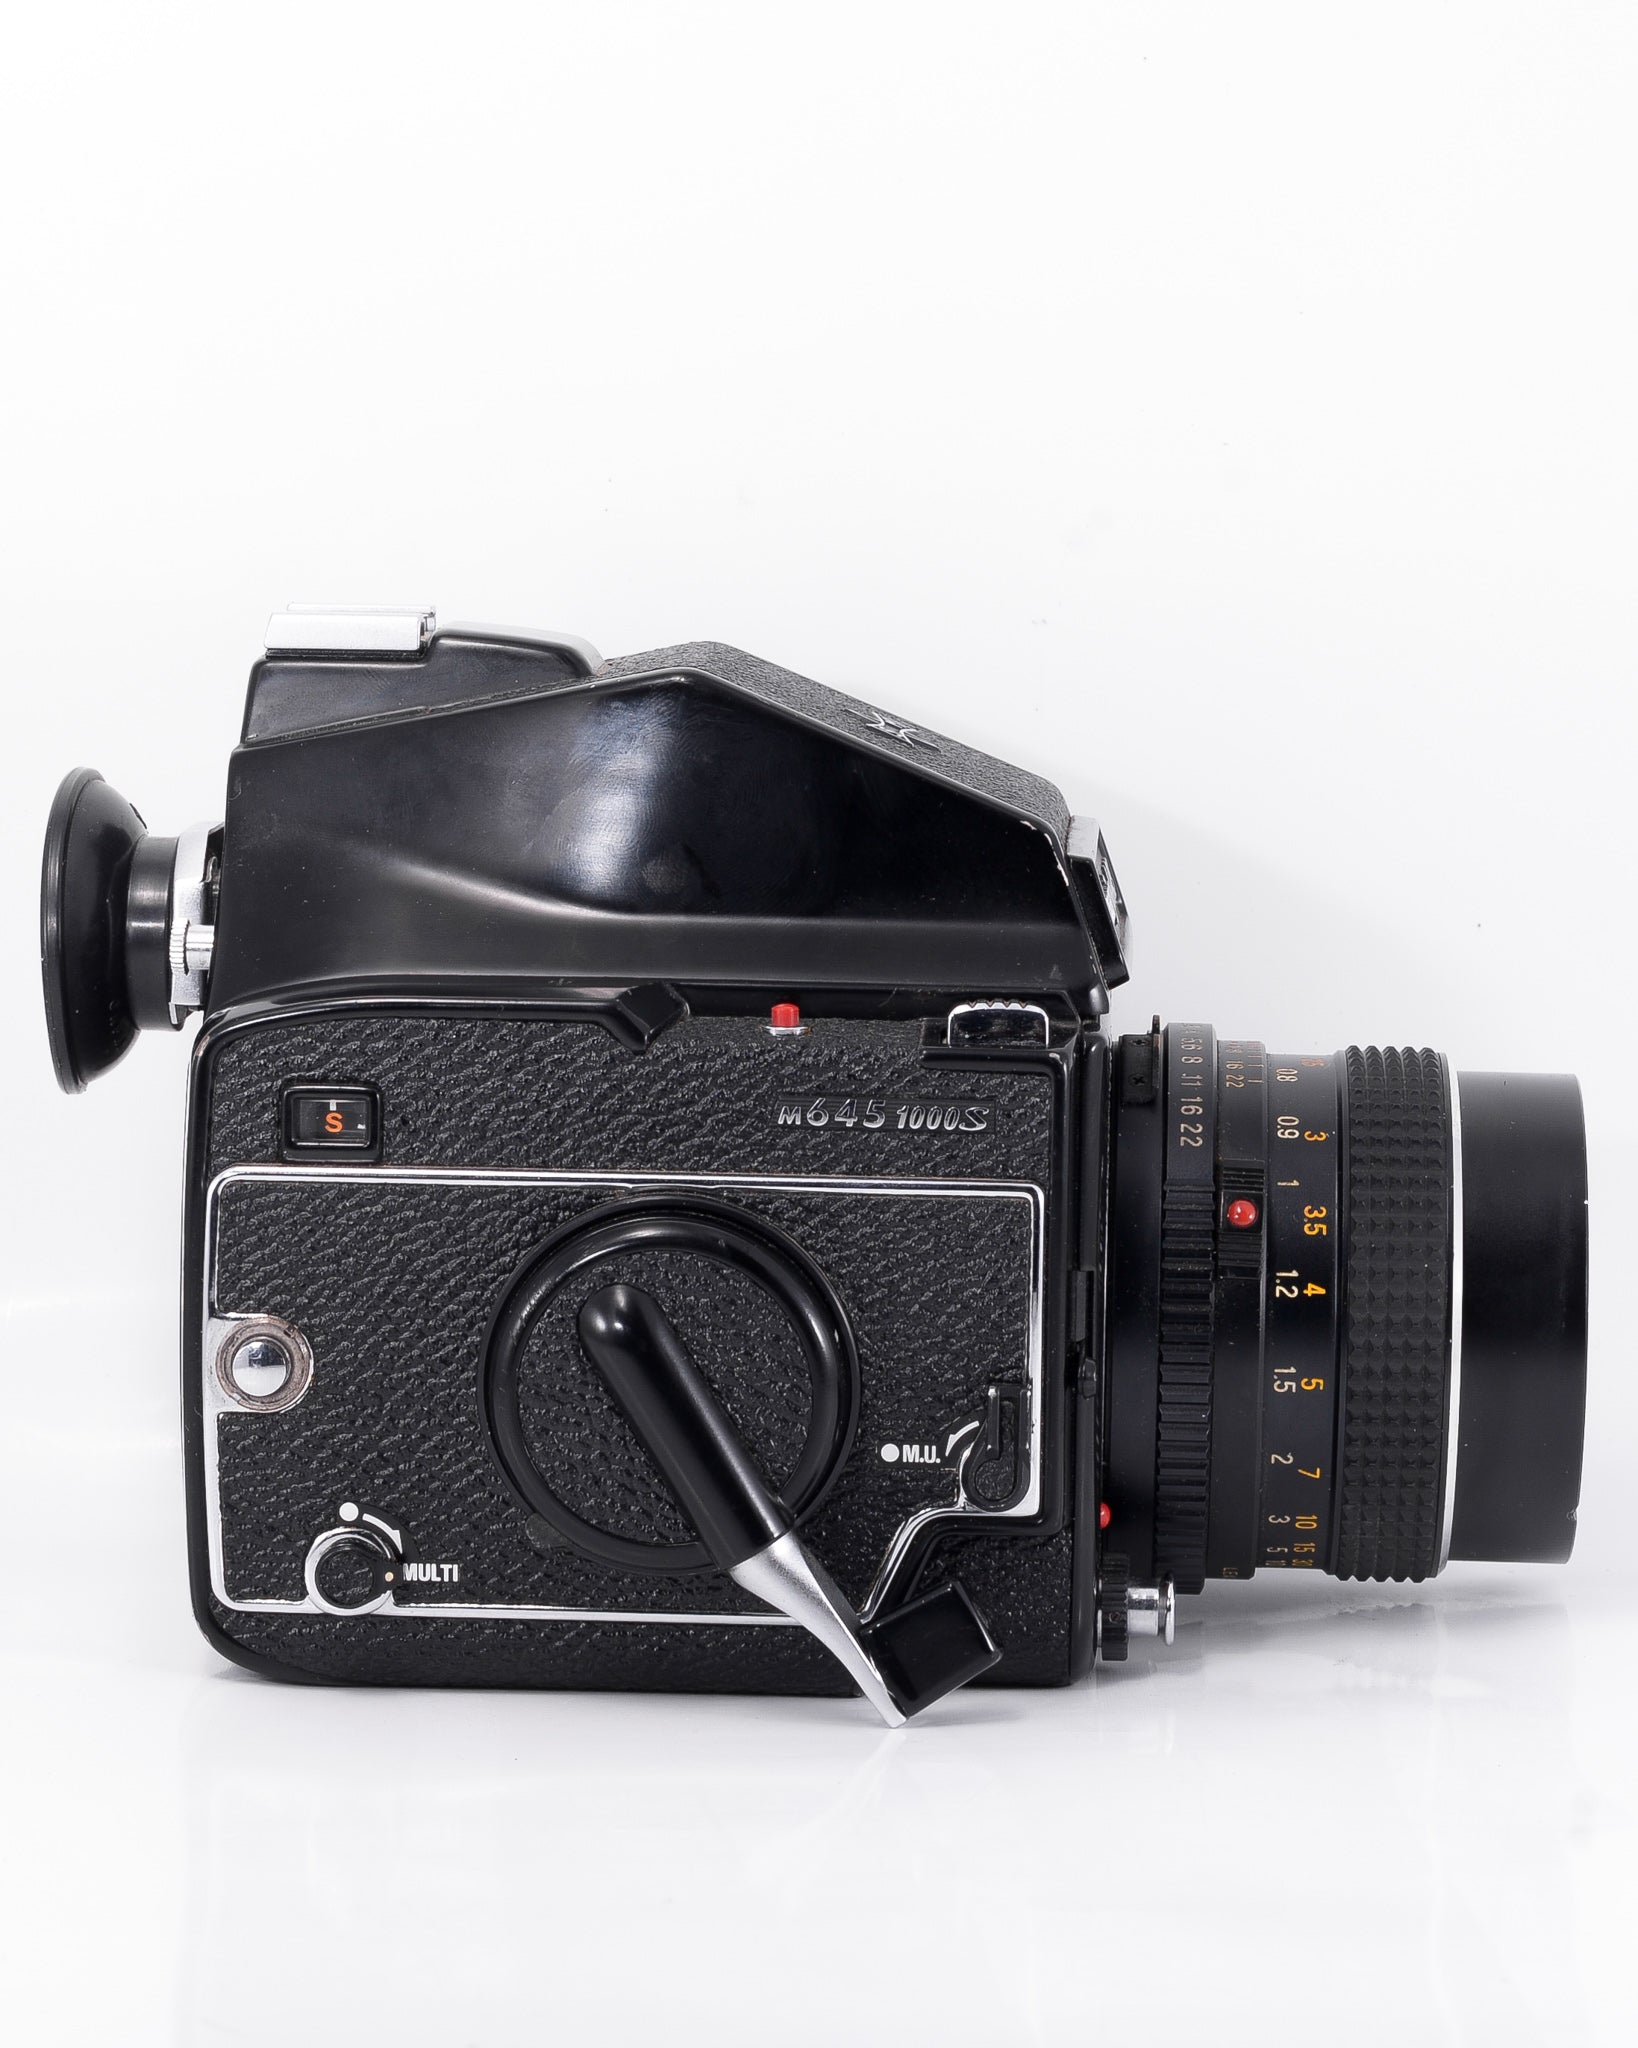 Mamiya M645 1000s Medium Format film camera with 80mm f2.8 lens 